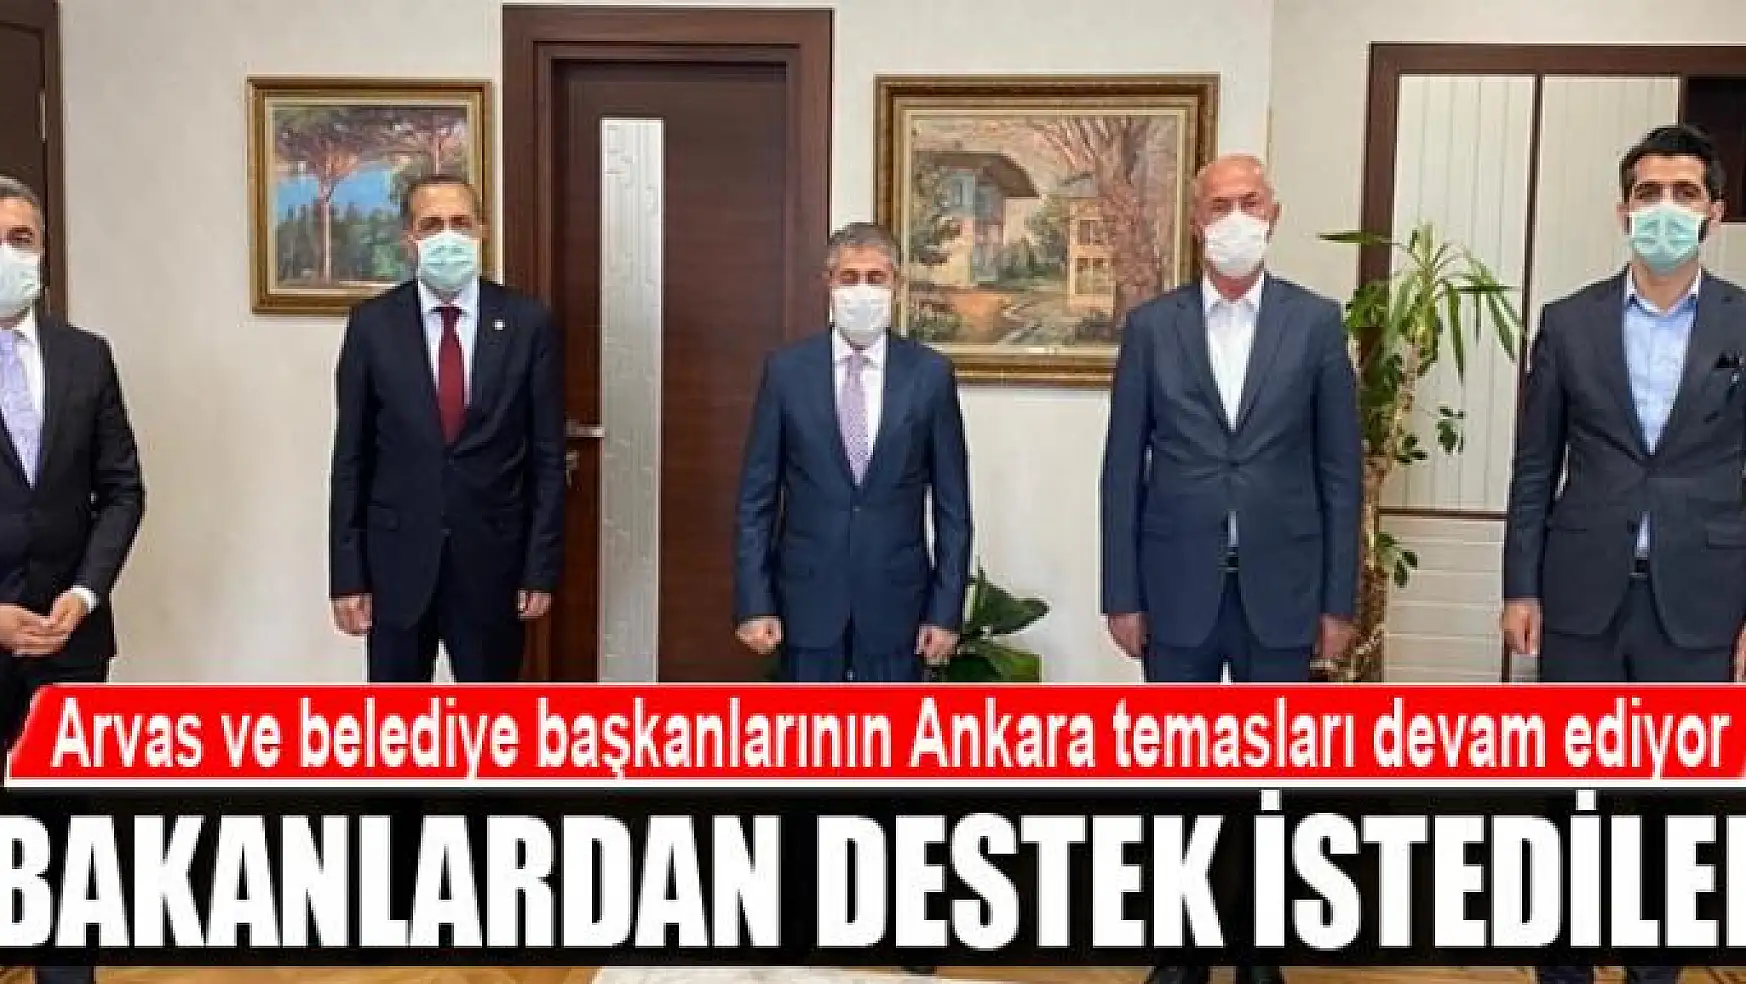 Arvas ve belediye başkanlarının Ankara temasları devam ediyor